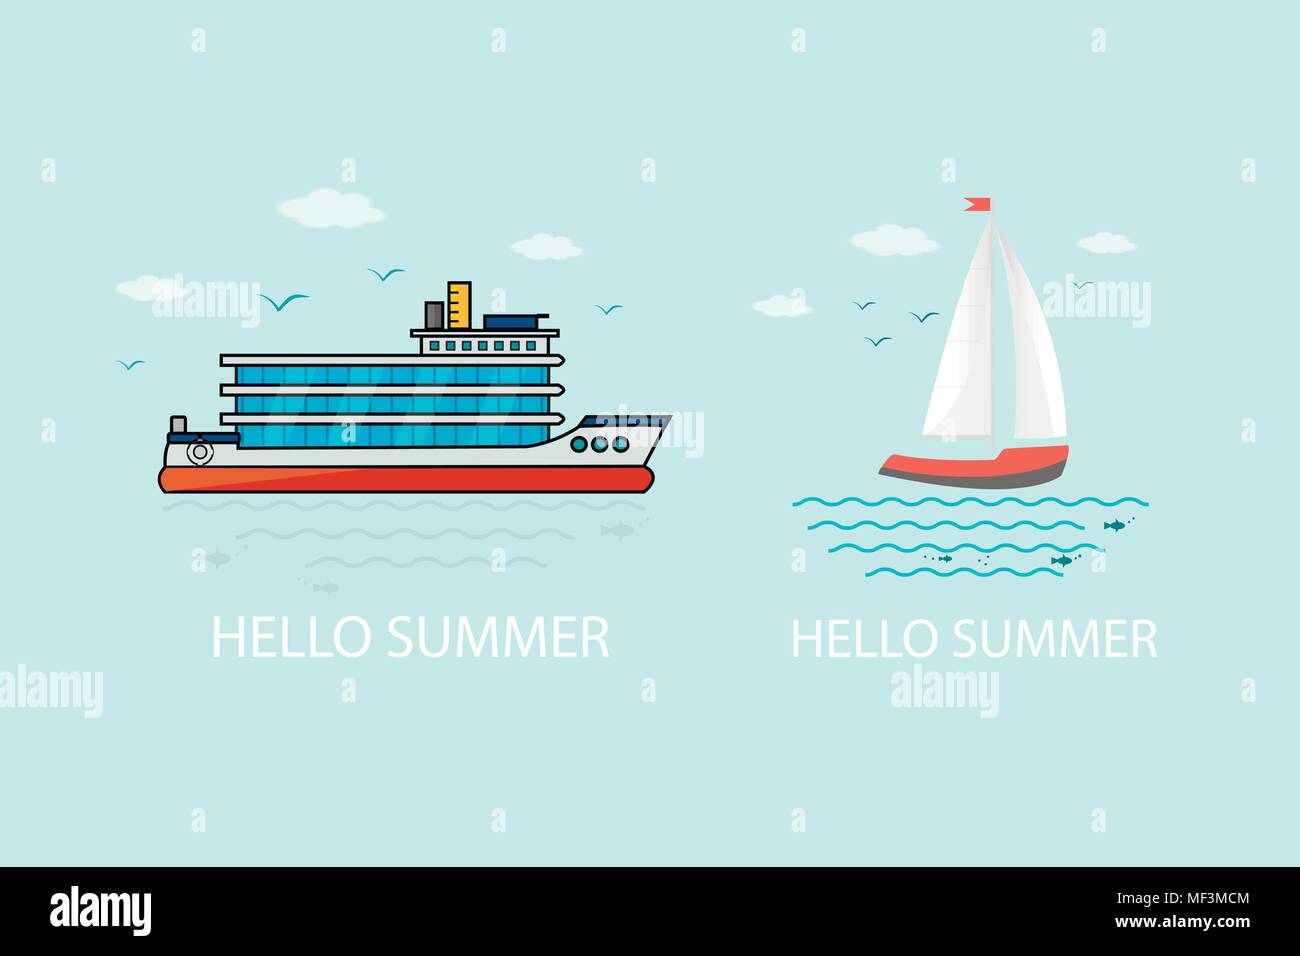 Sammlung von nautische Fahrzeuge: Segeln, Boot, Schiff, Schiff, Luxus Yacht, Schnellboot. Vektor Symbole auf dem blauen Hintergrund isoliert. Stock Vektor